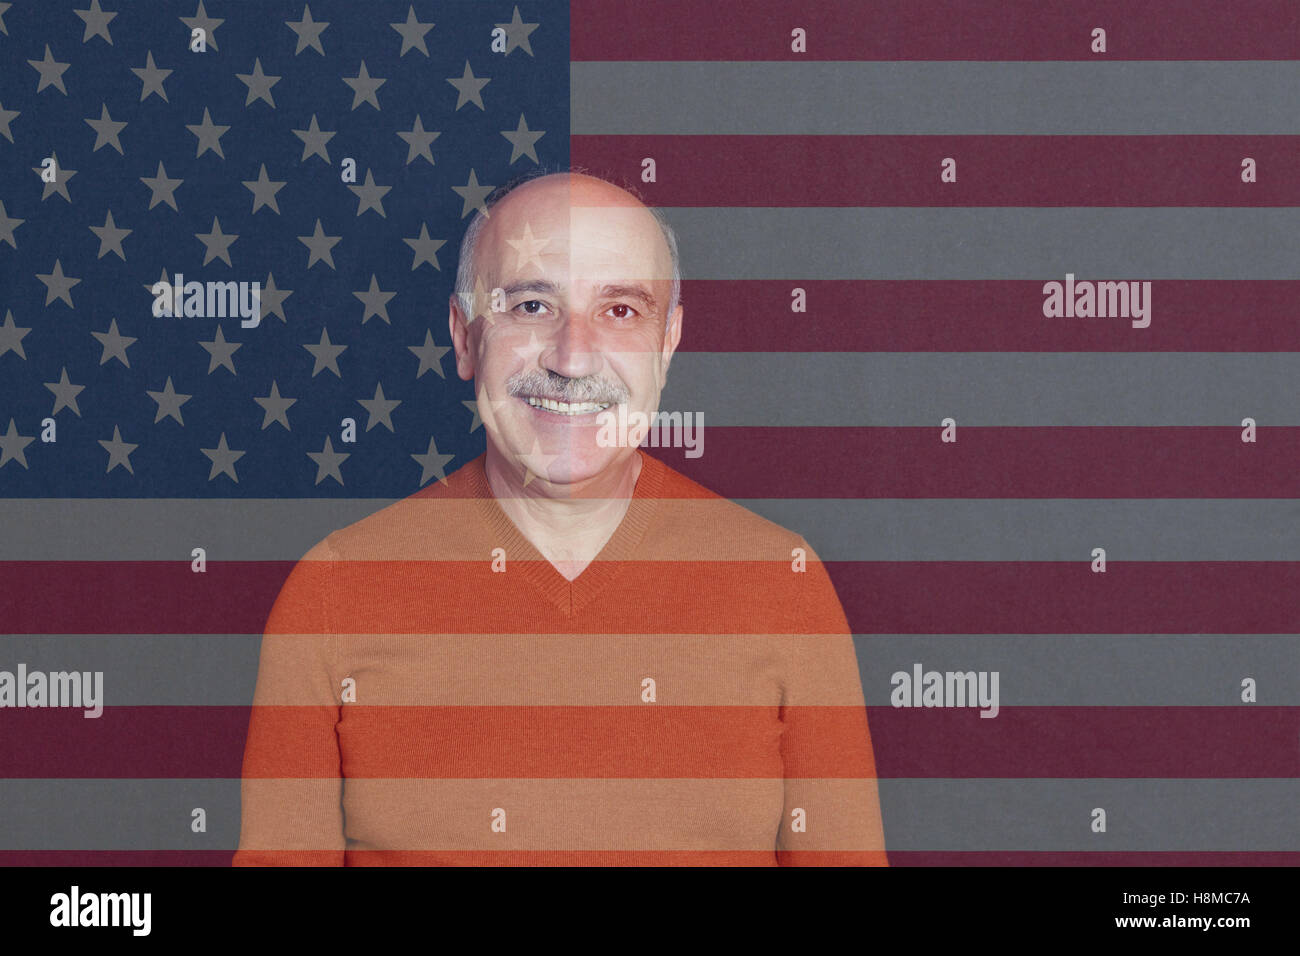 Armenian homme debout en face de l'US Flag Banque D'Images